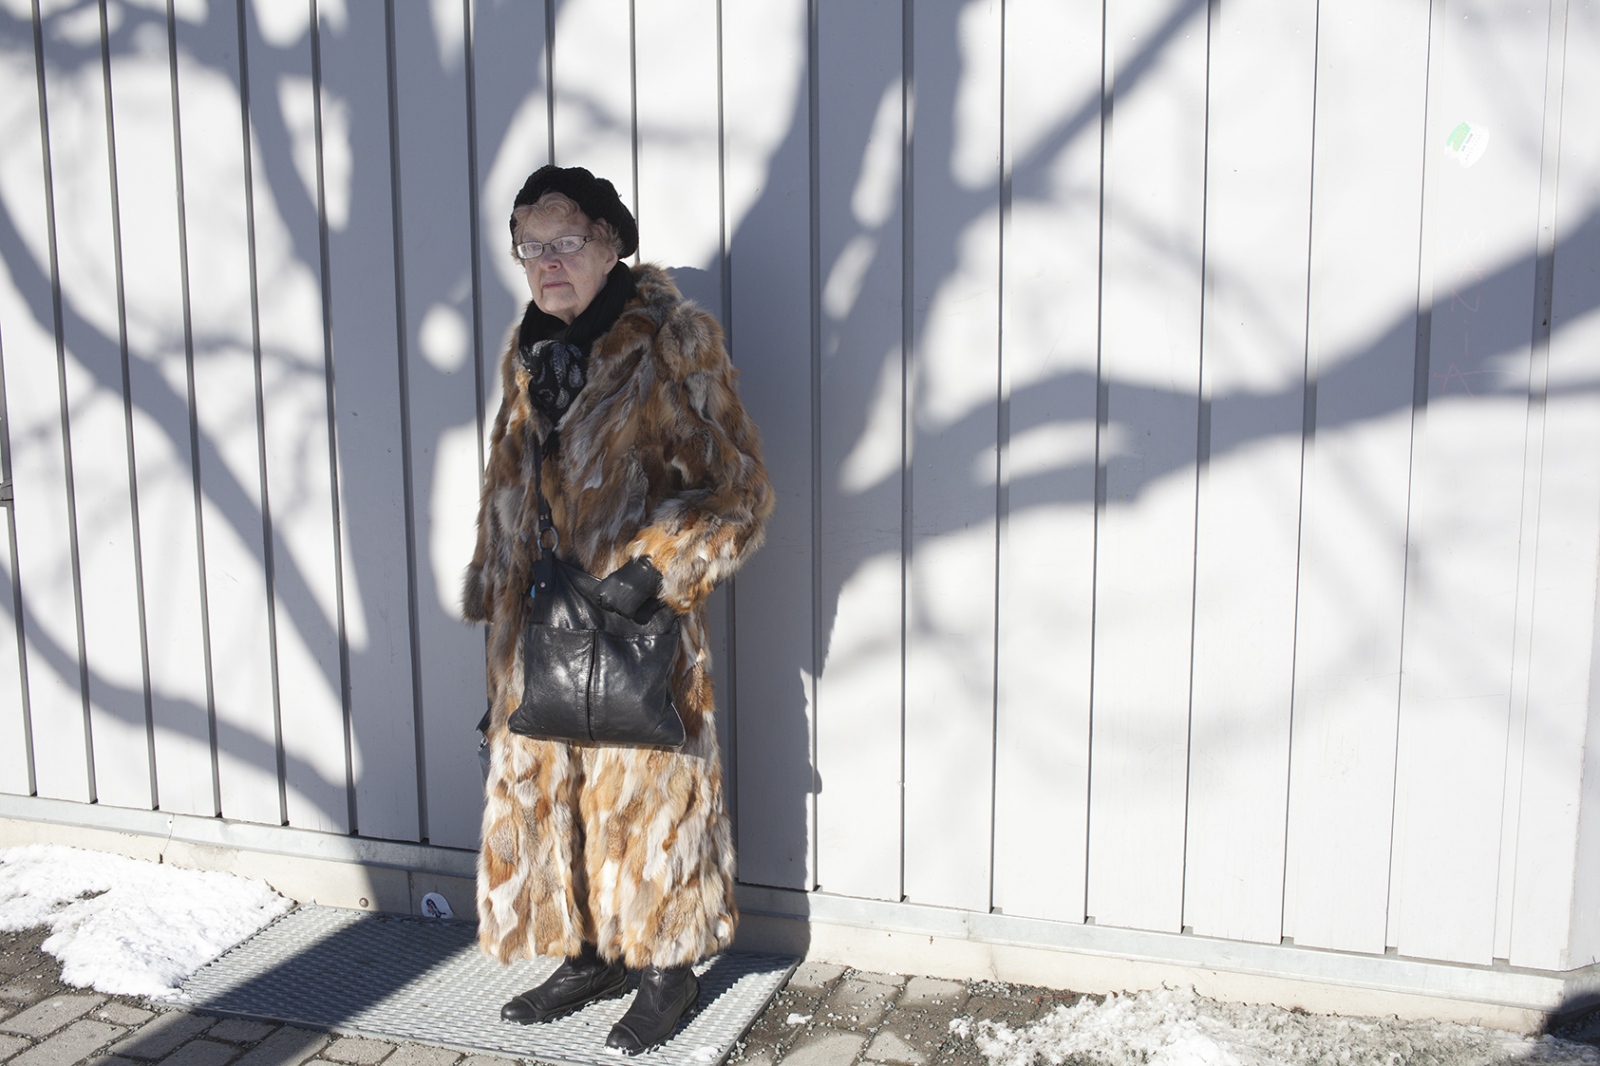  Fur woman in shadow, Norway 2014. 